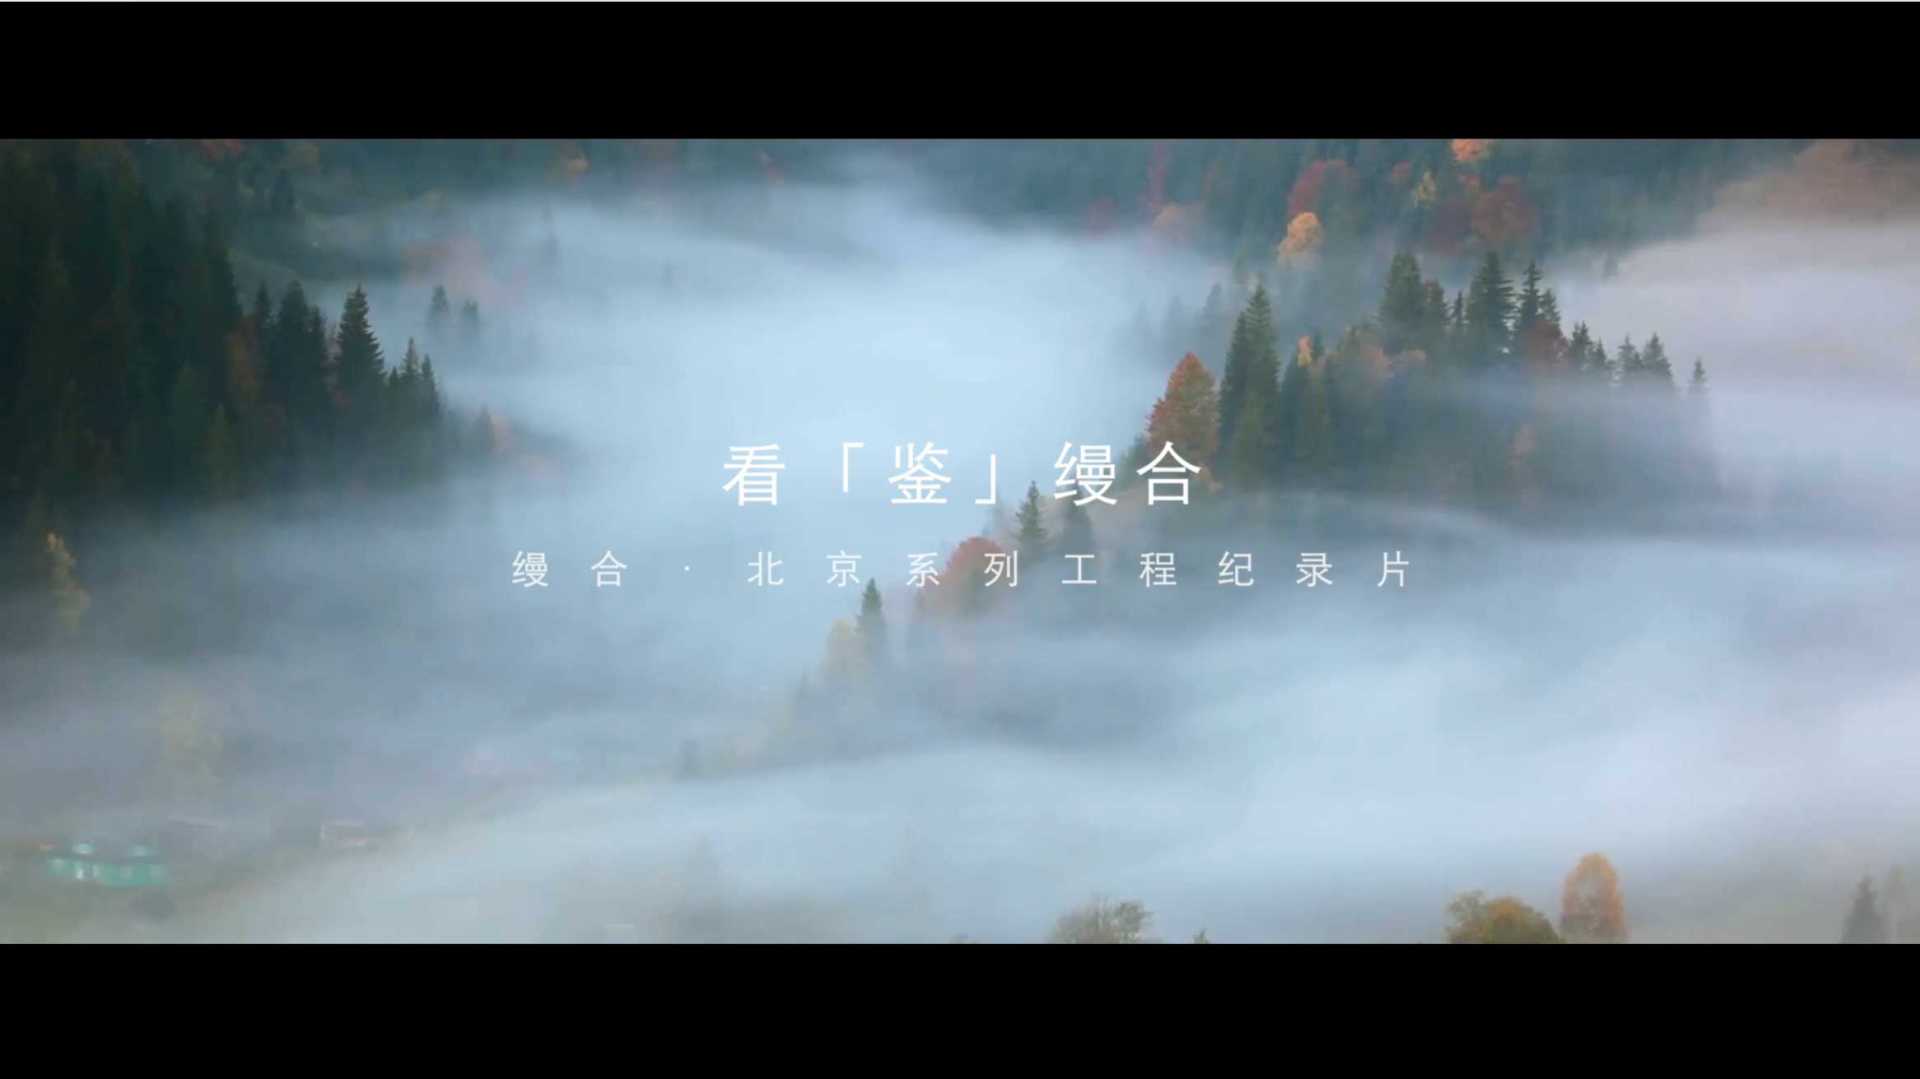 缦合·北京 工程纪录片